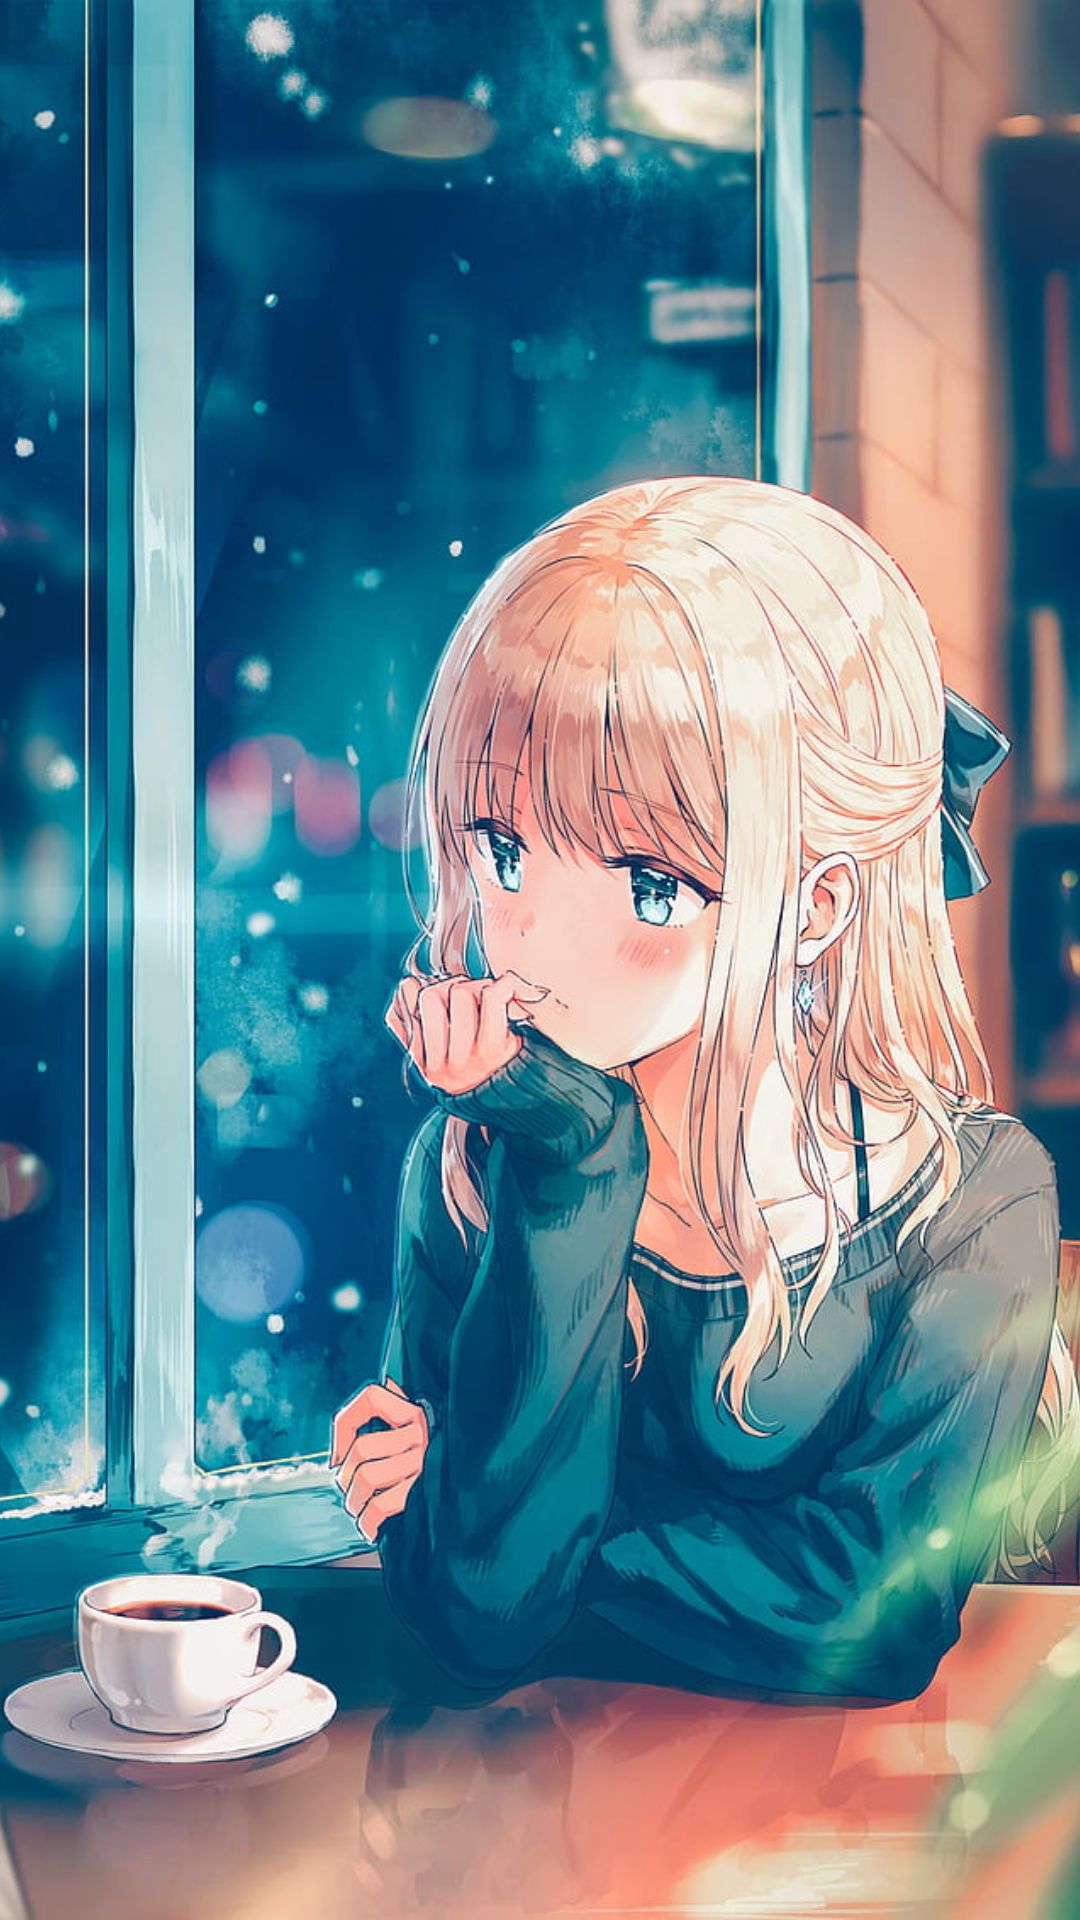 Xem ngay top 20 anime hình nền cute Dành cho người yêu dễ thương